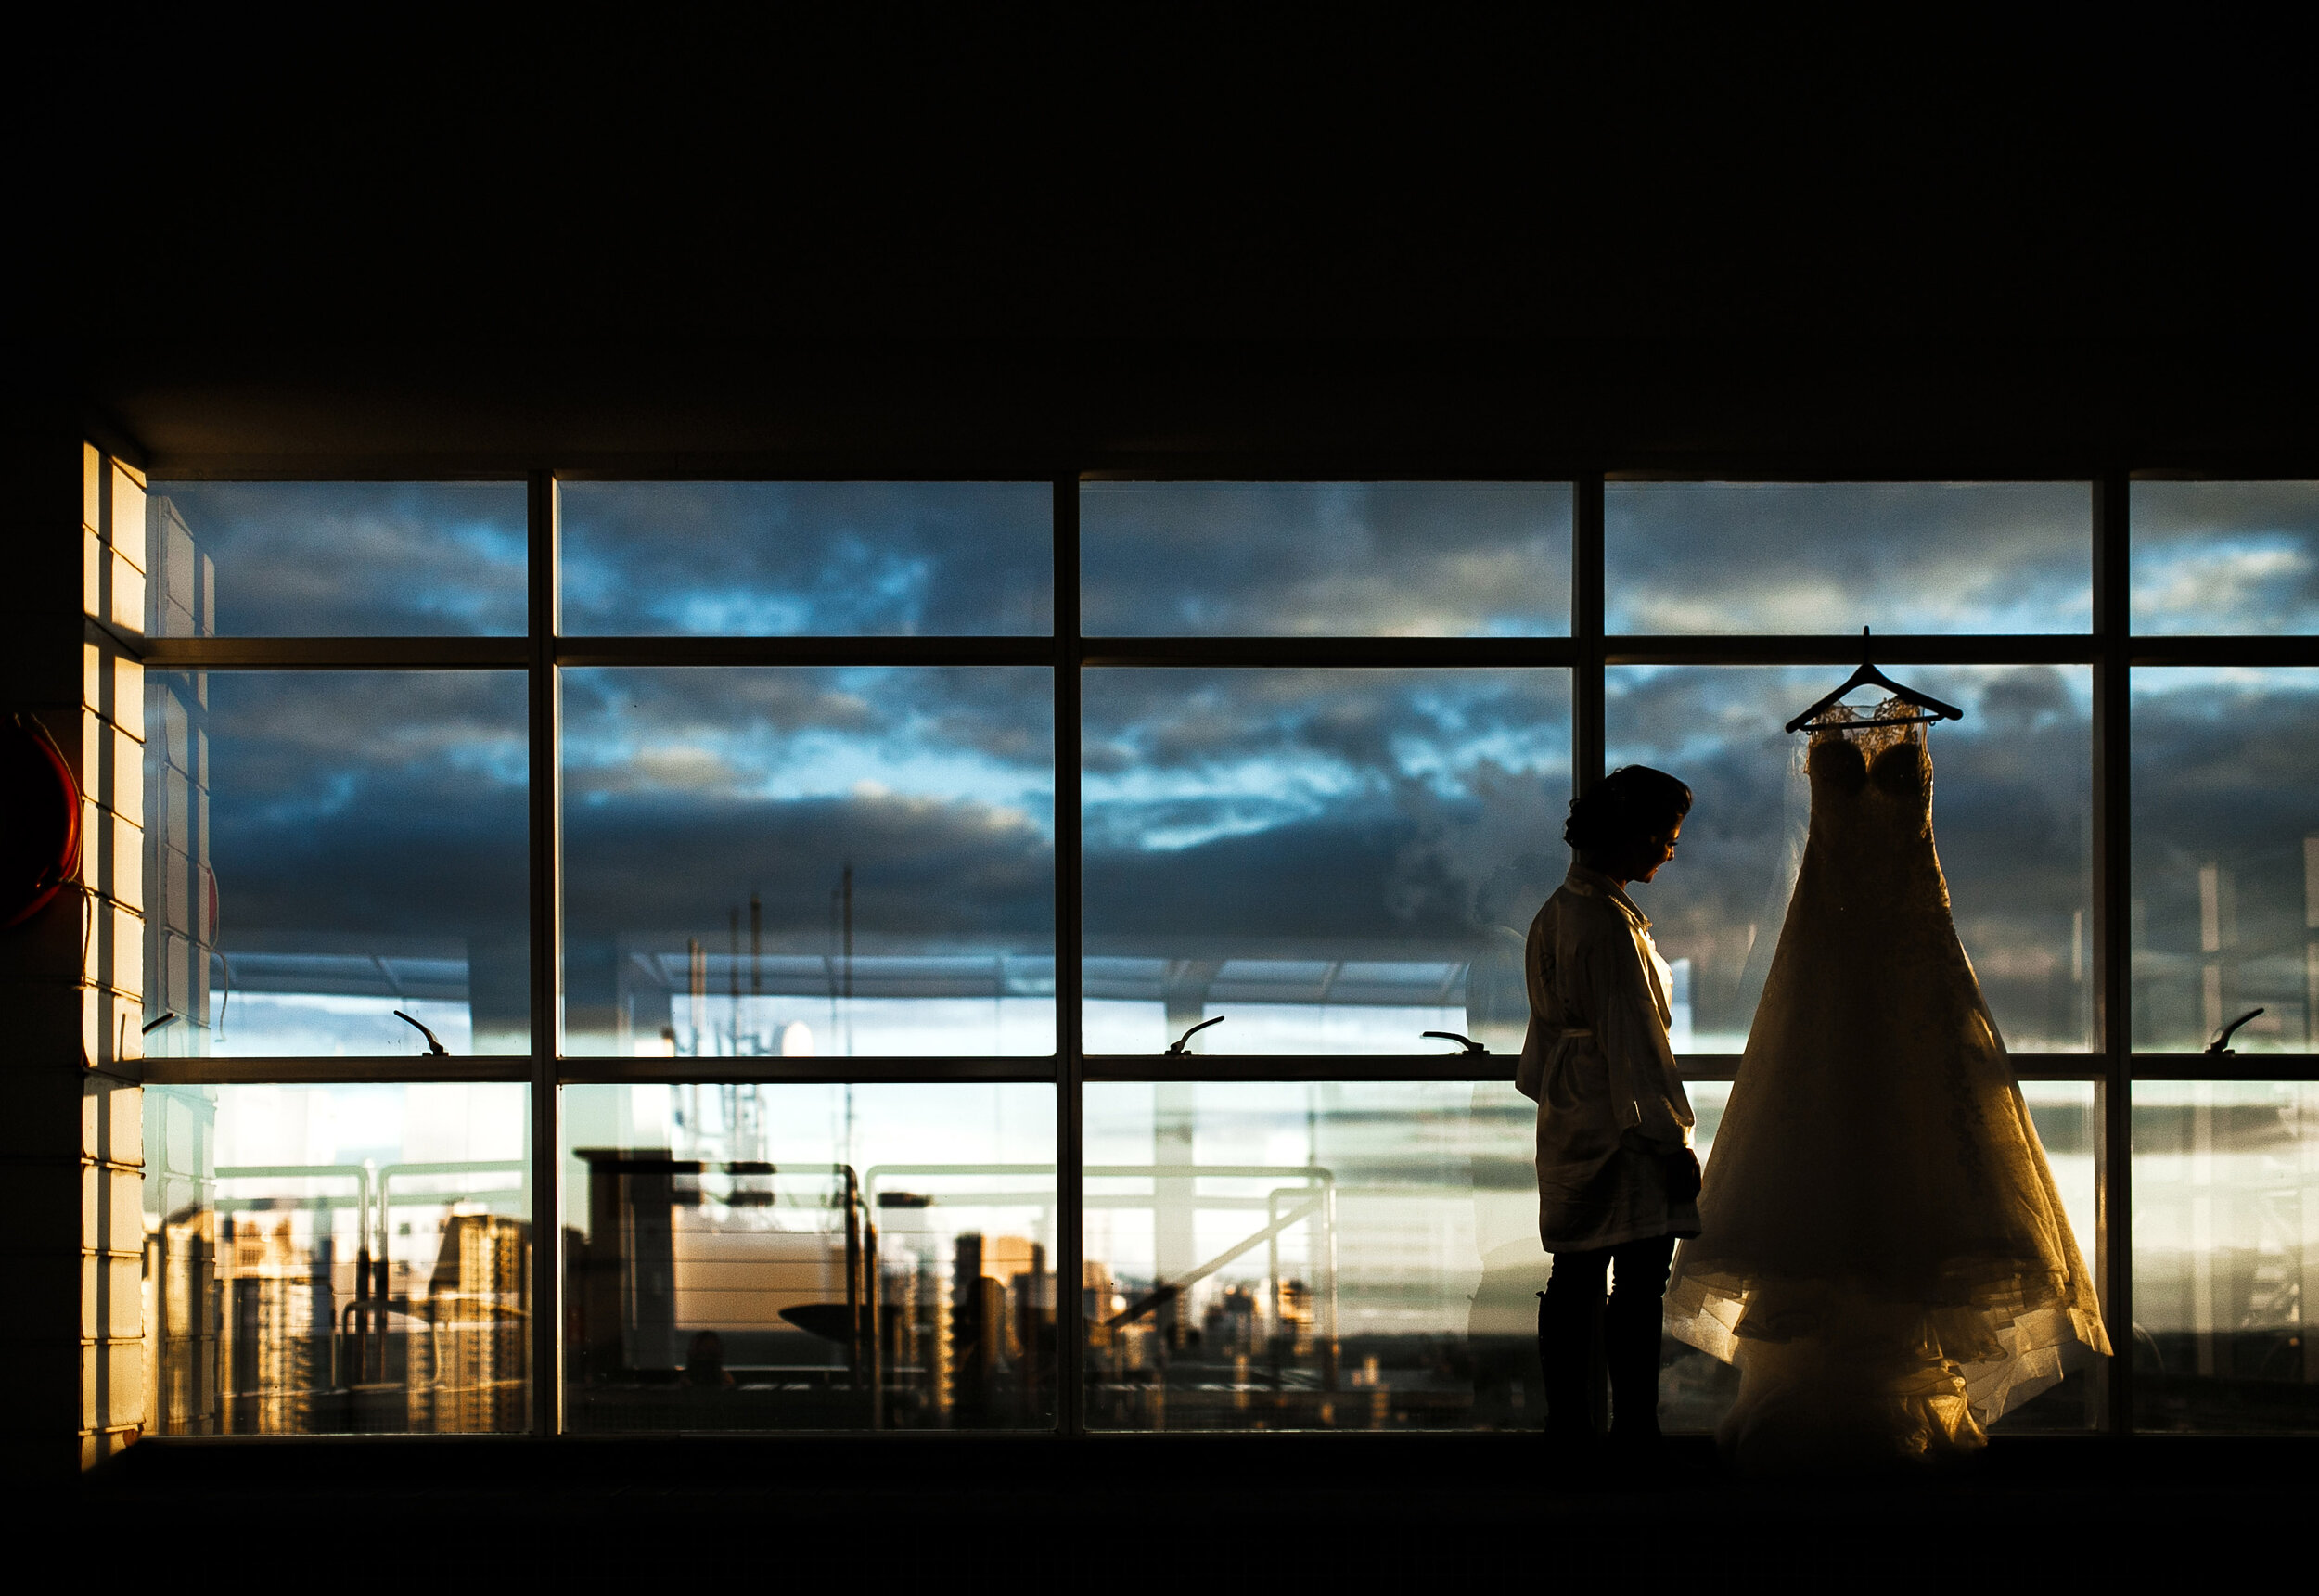 Cheng NV fotografo de casamento em Curitiba- Melhor fotografia do brasil - MIni casamento - Inspiração de decoração - 2020 - noiva - inesquecivel casamento_.27.jpg